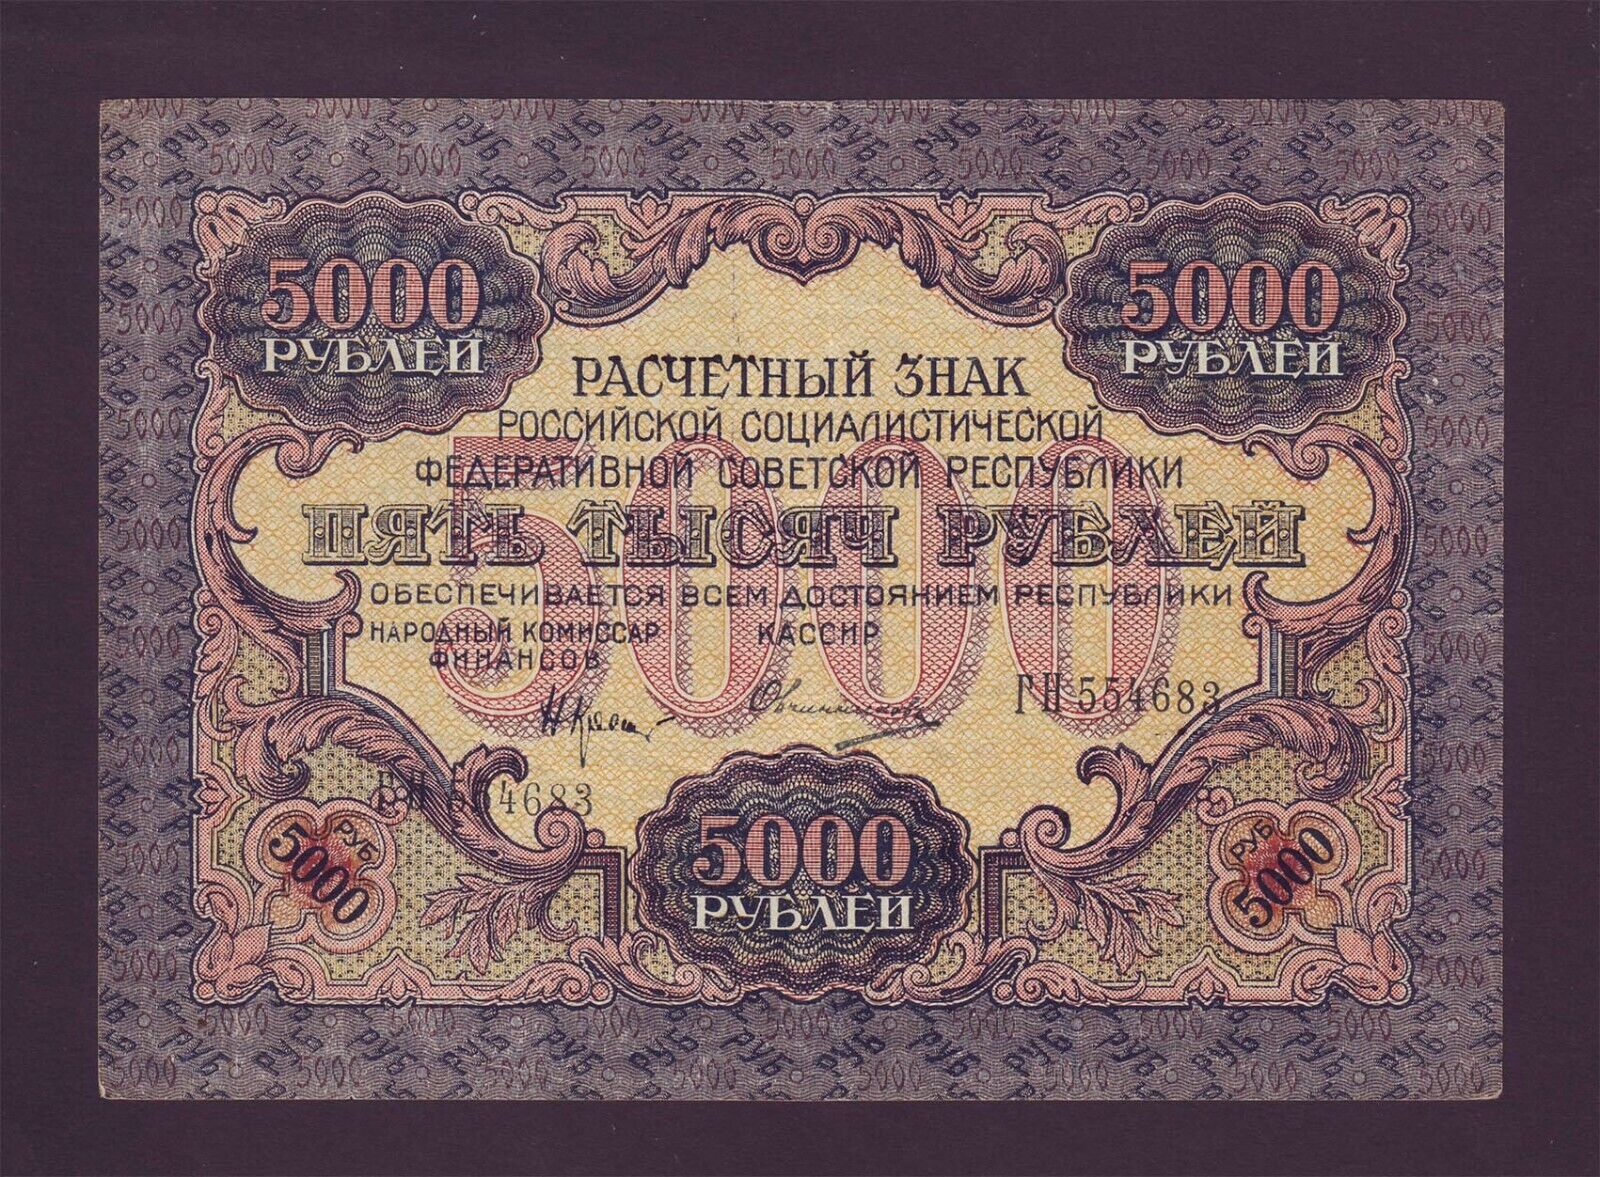 5000 Rubles 1919 Russia p105a broad waves Russian Lenin Krasin-Ovchinnikov XF Kupowanie bomb, obfite